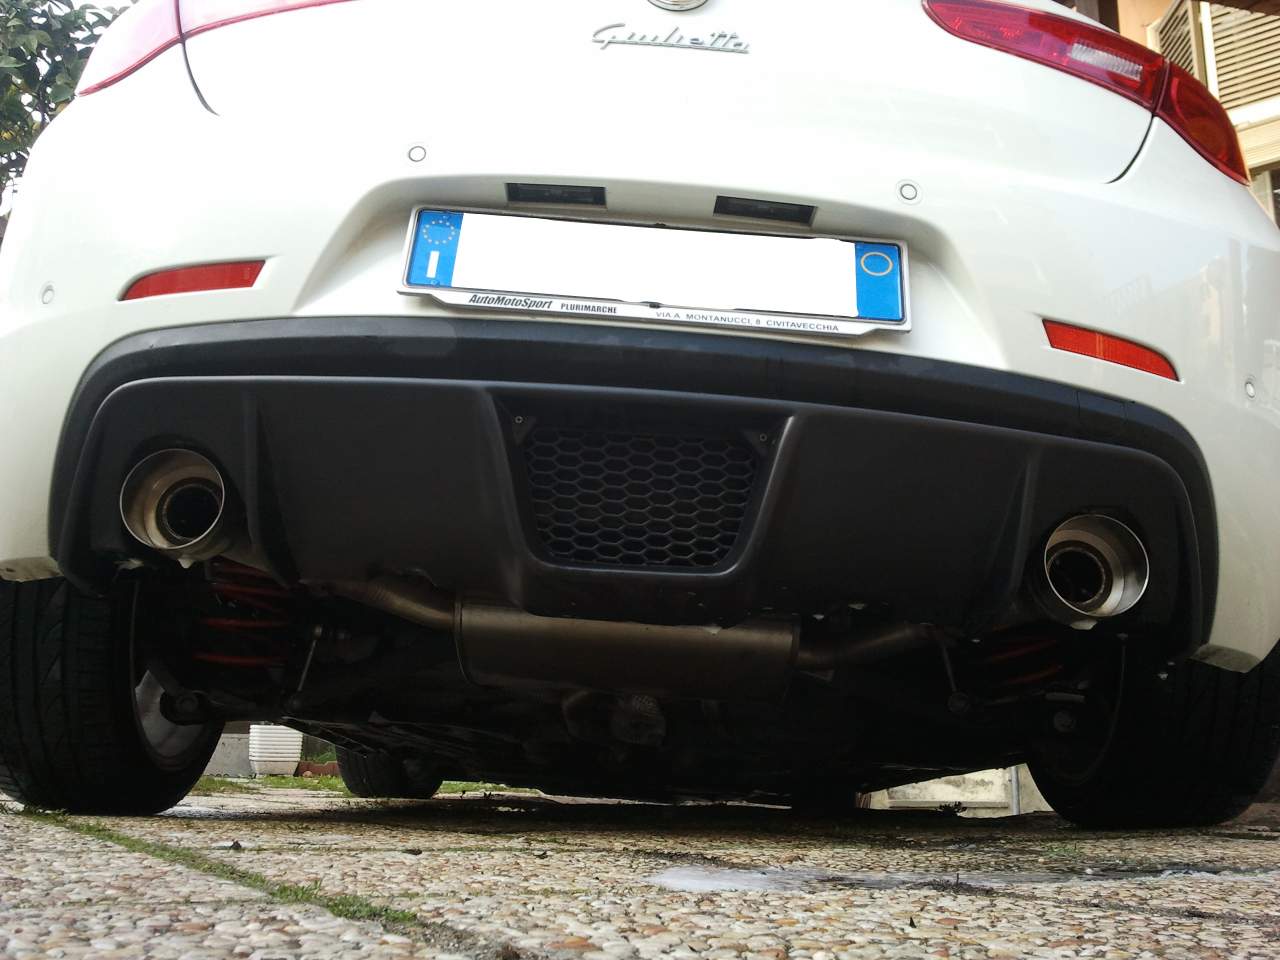 Giulietta - Montare estrattore posteriore aftermarket (no Linea